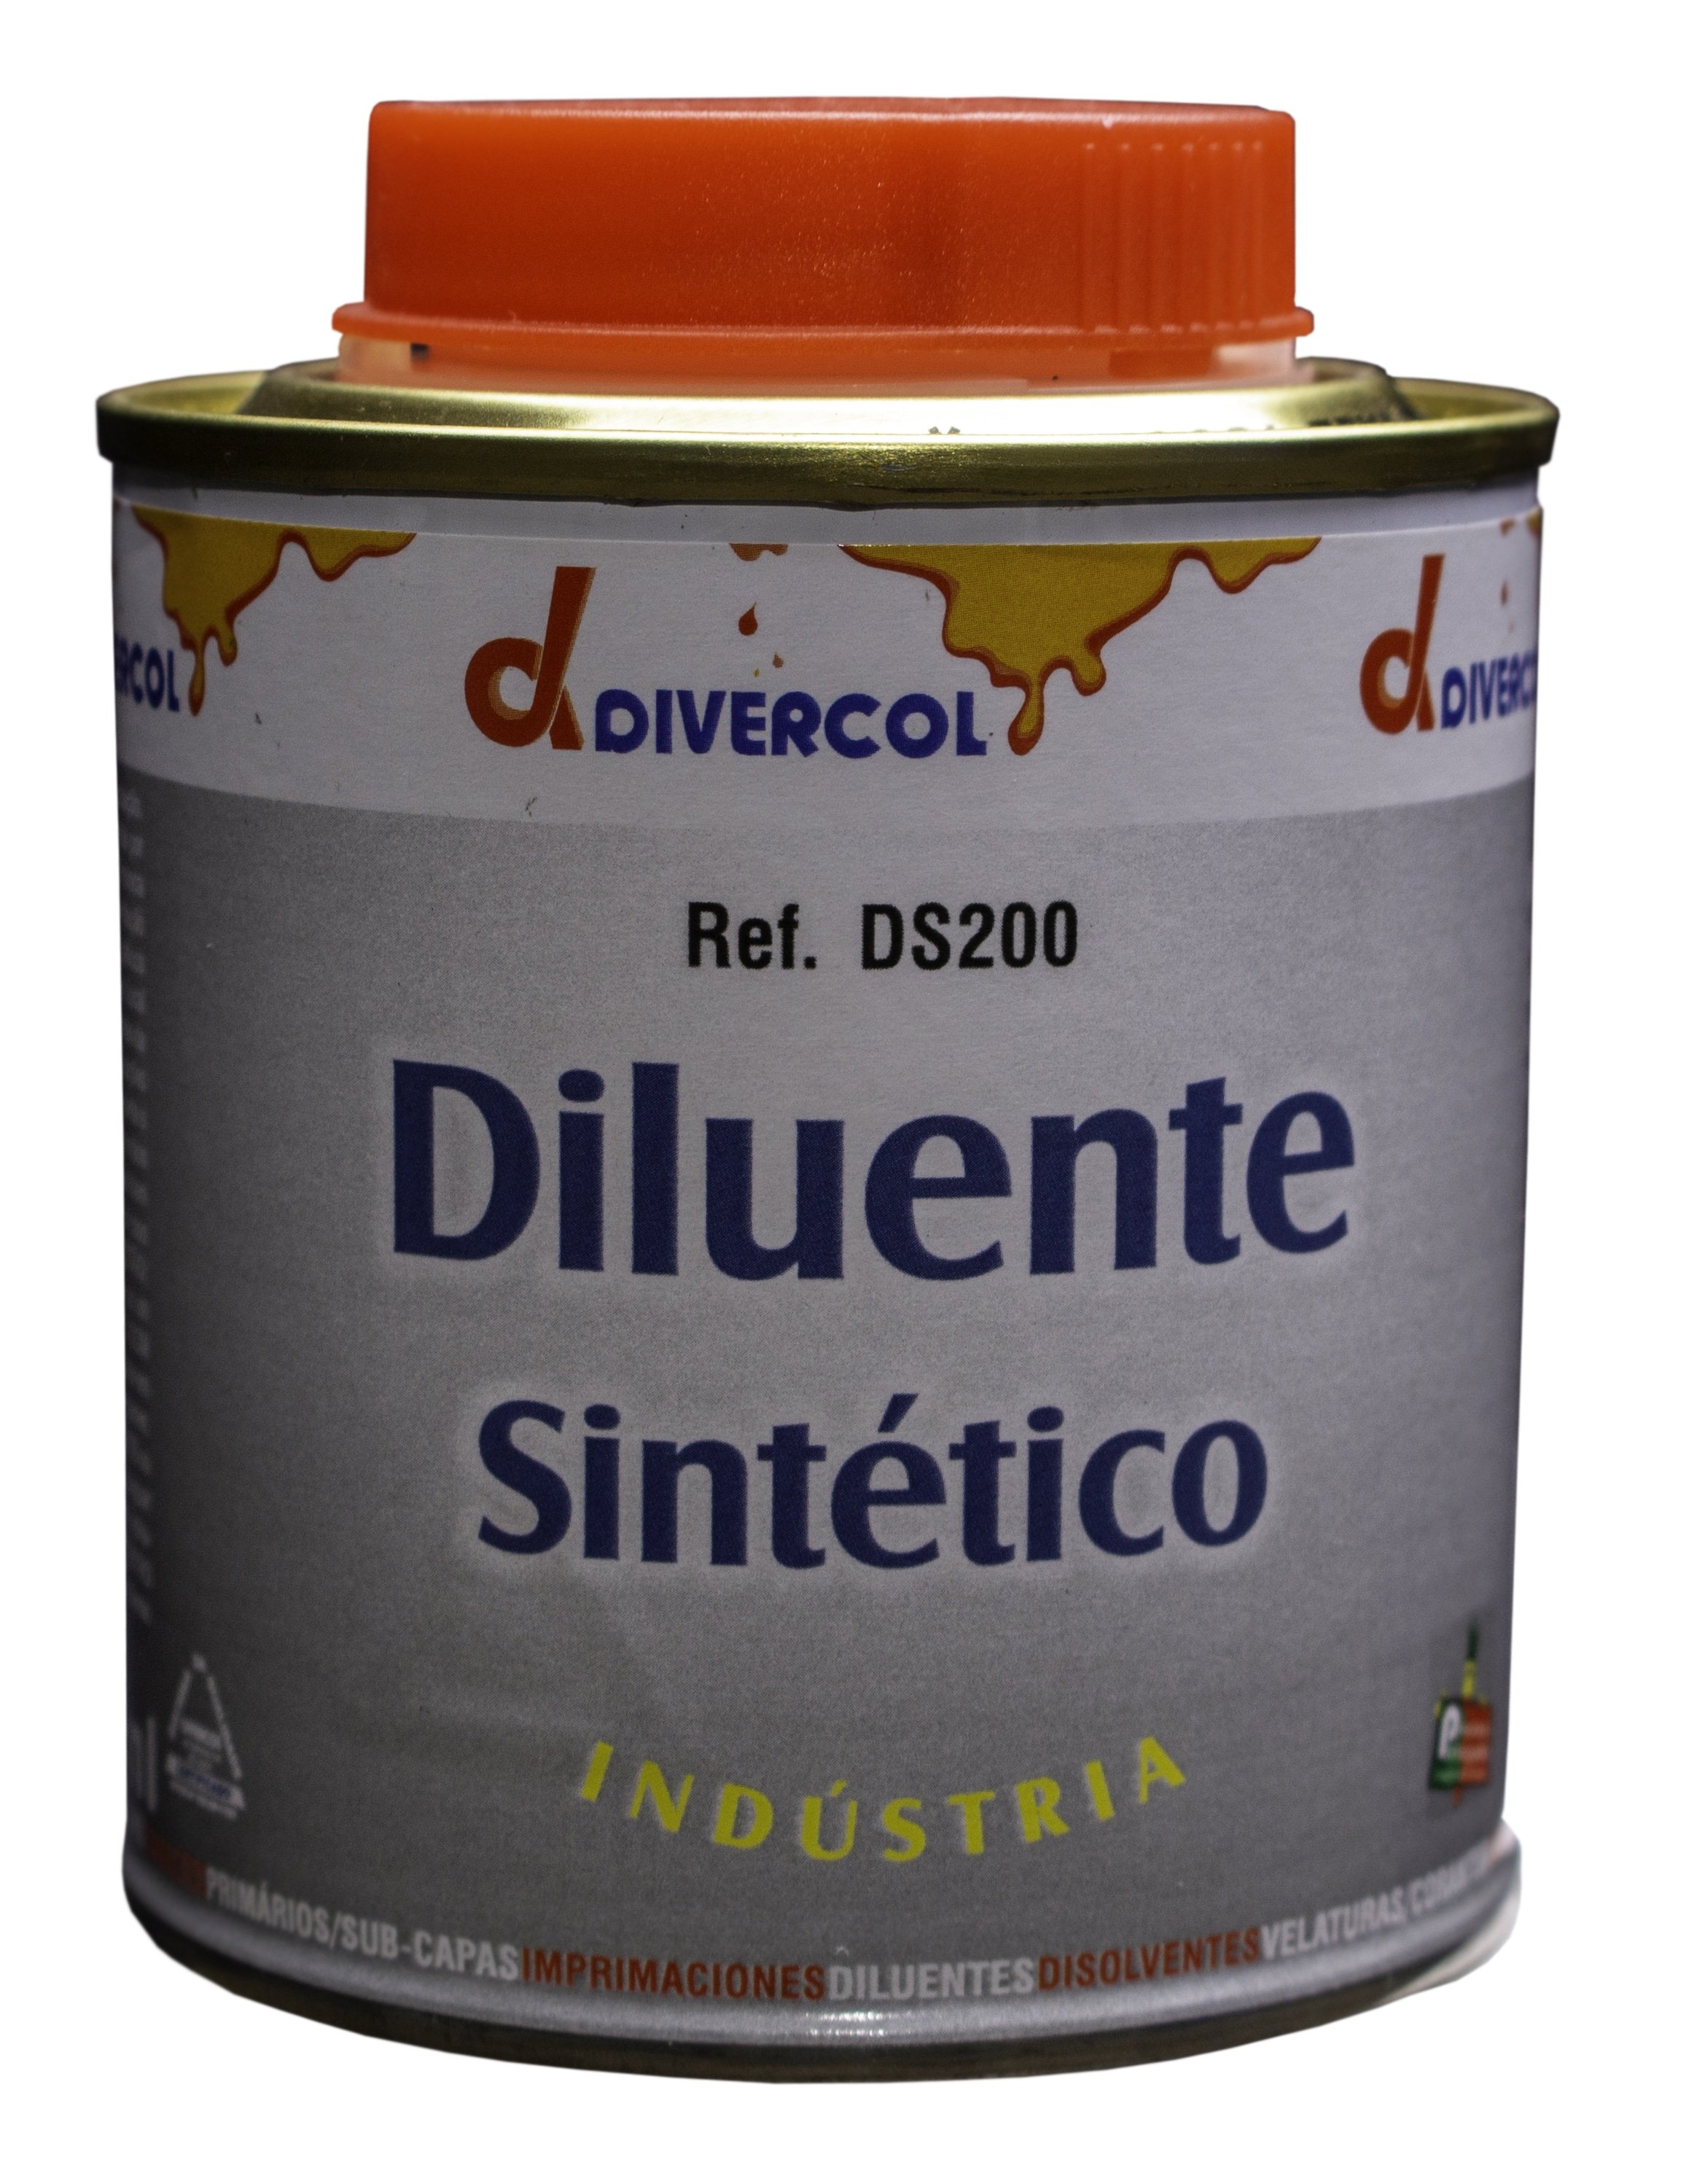 DIVERCOL - Diluente Sintético Industrial 0.25L